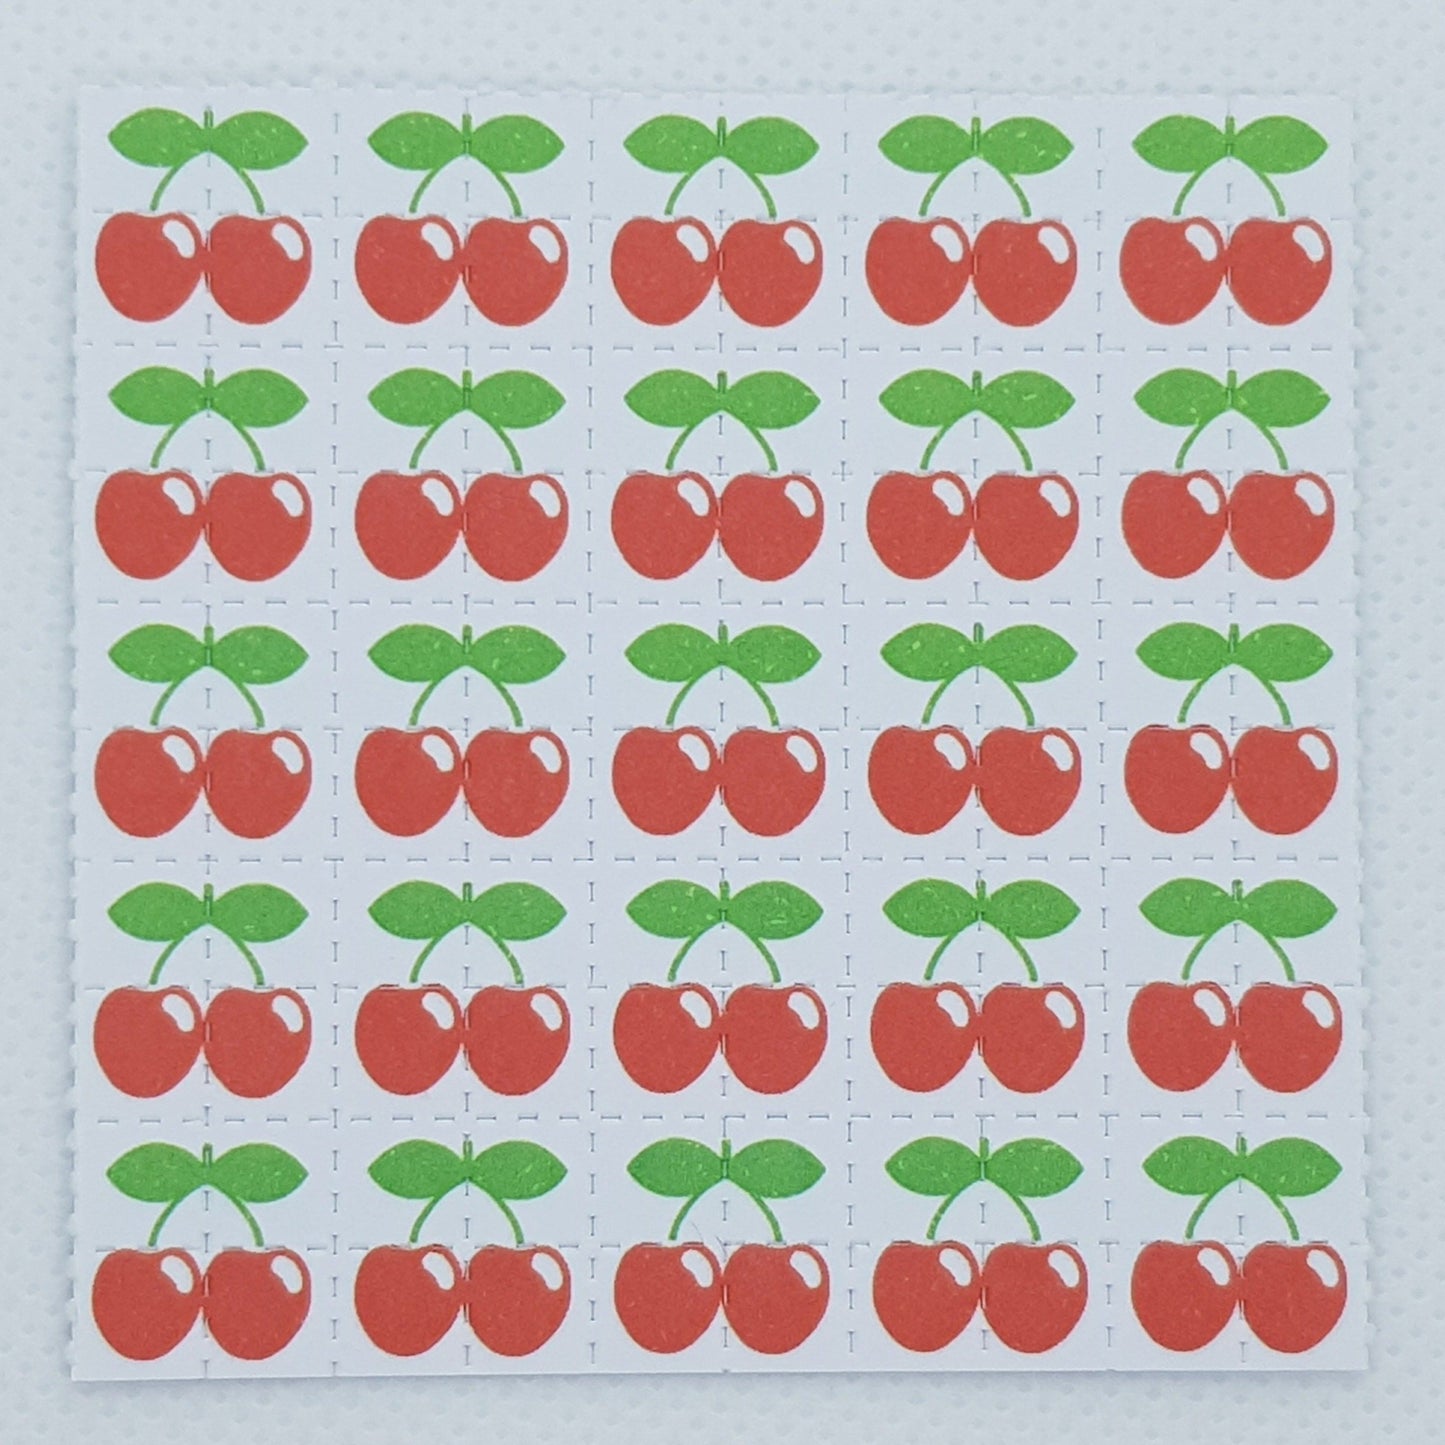 Cherry blotter art sheet 